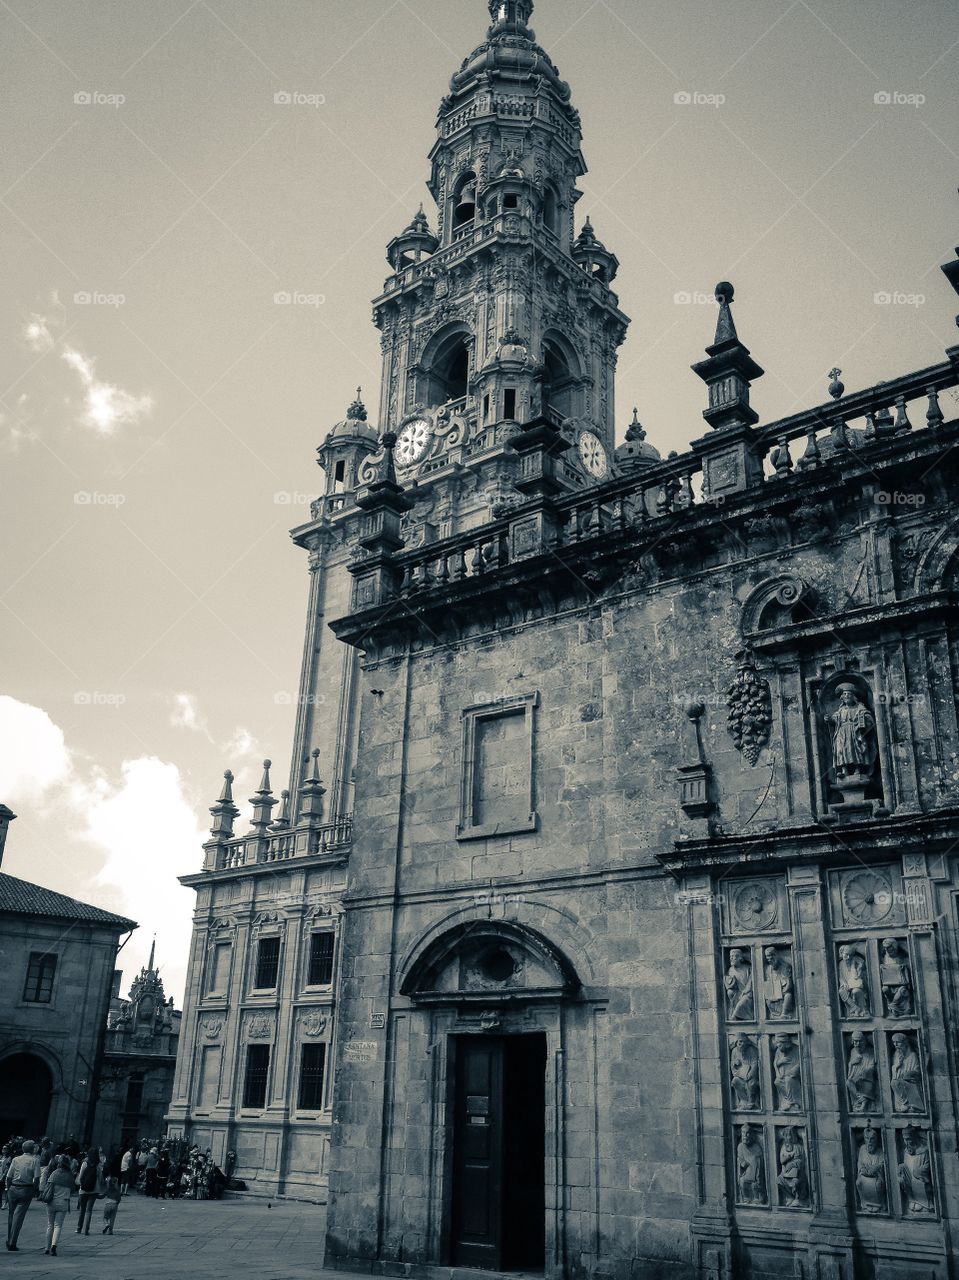 Catedral de Santiago de Compostela desde la Plaza de Quintana de Vivos. Catedral de Santiago de Compostela desde la Plaza de Quintana de Vivos (Santiago de Compostela - Spain)